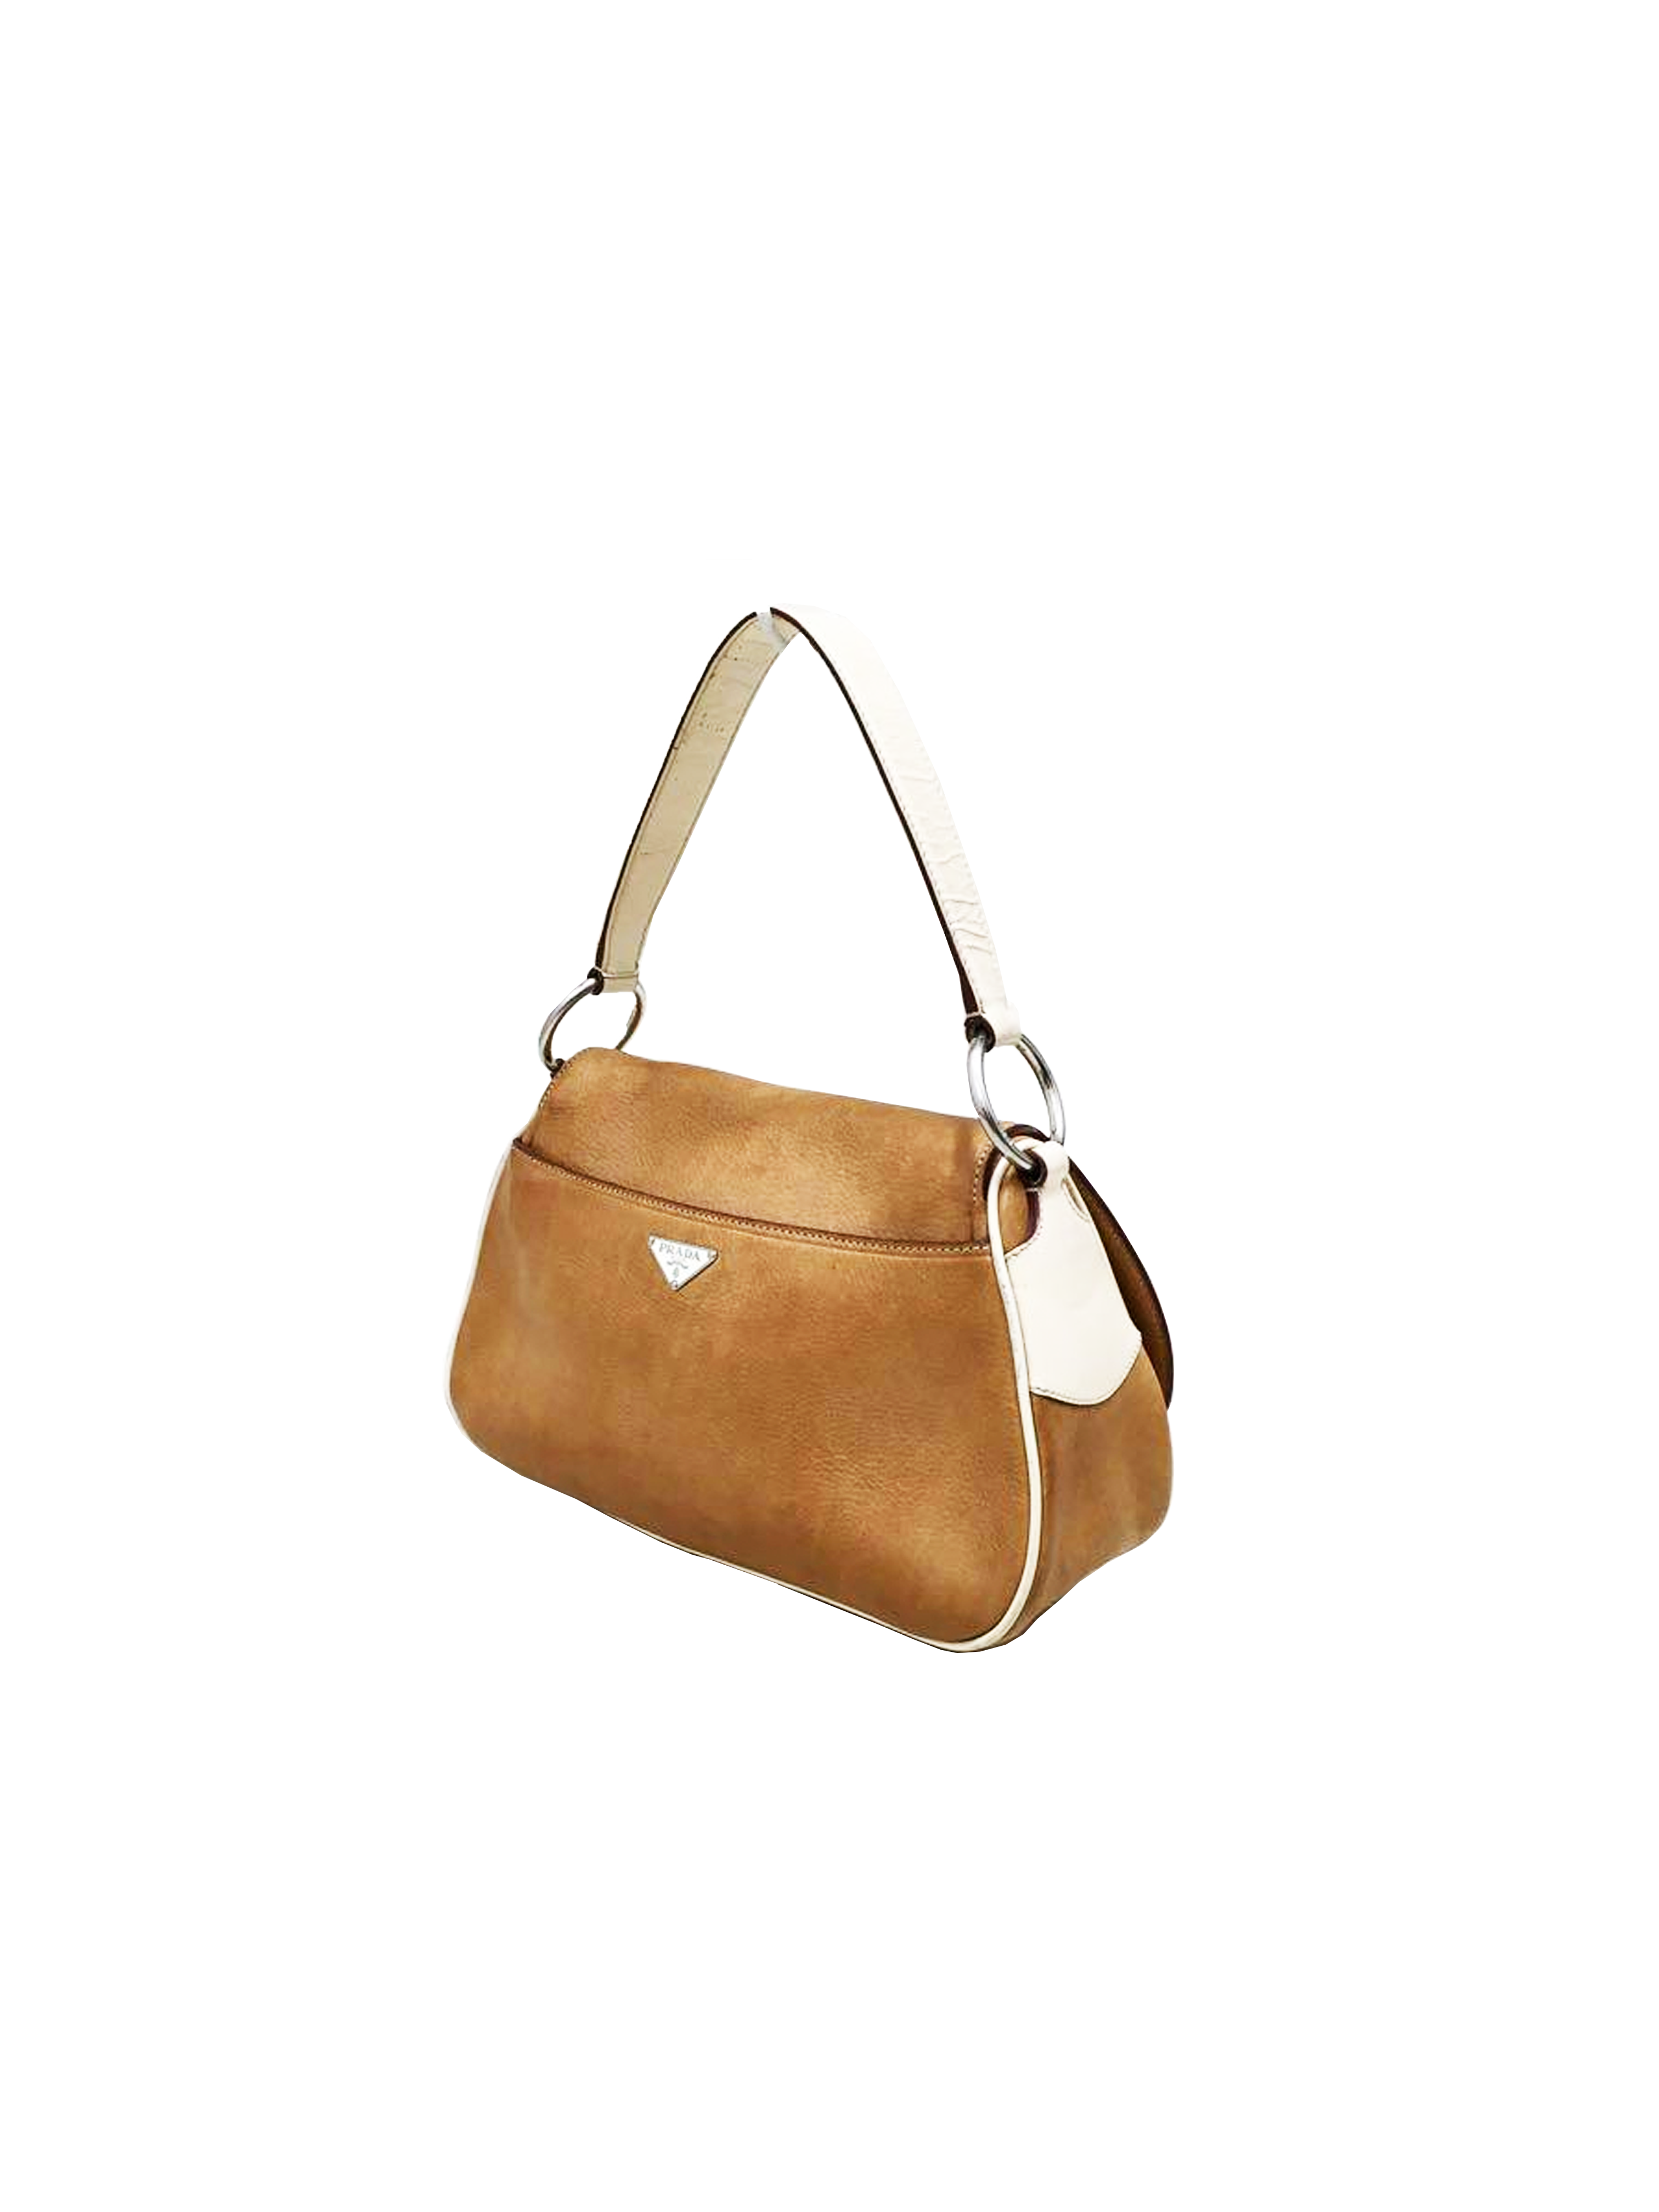 Vintage Prada Brown Nappa Leather Shoulder Bag  Bags, Leather shoulder bag,  Brown leather shoulder bag